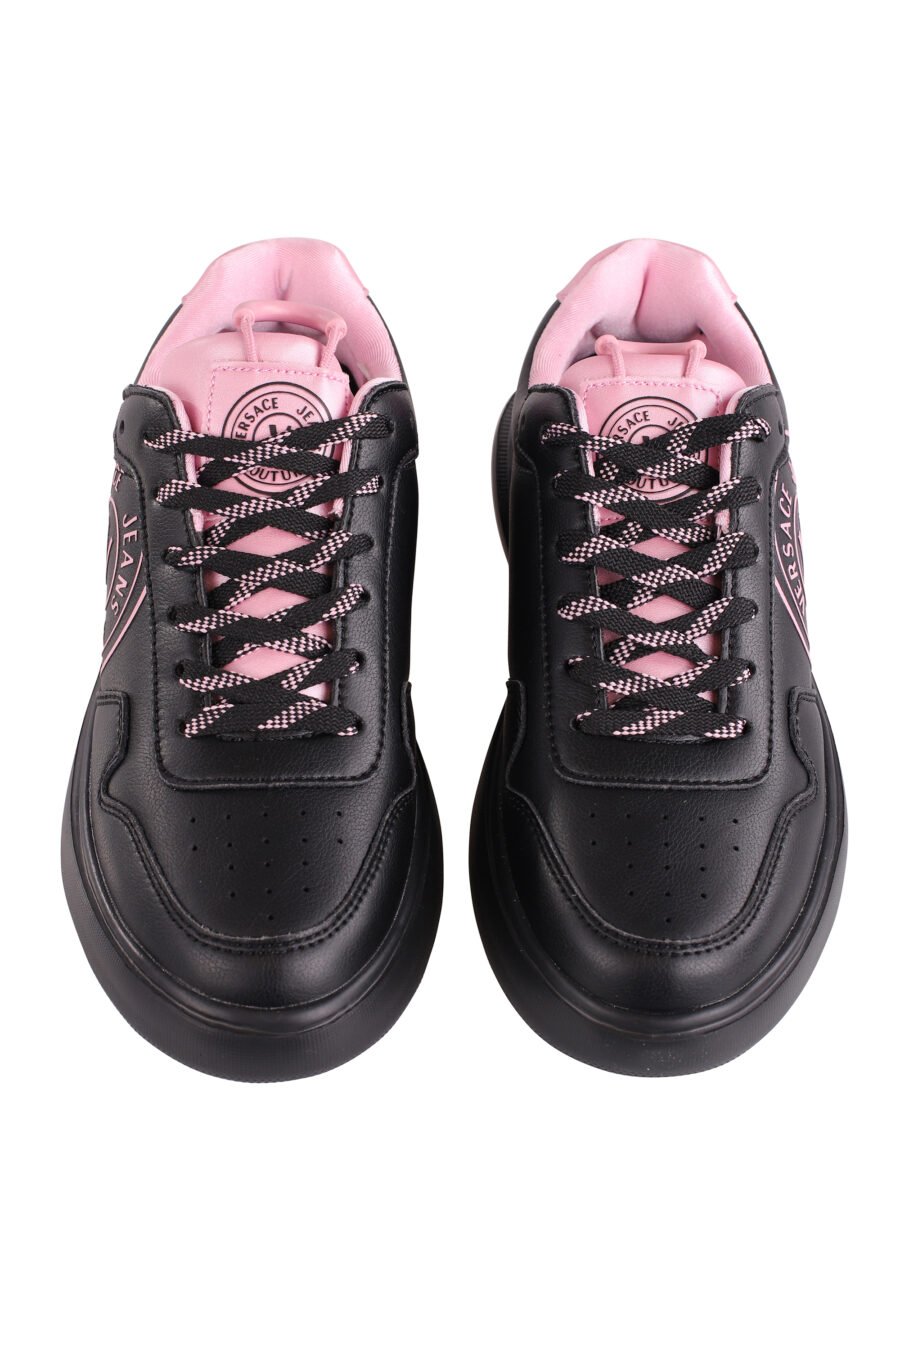 Sapatilhas pretas com pormenores e logótipo rosa - IMG 9112